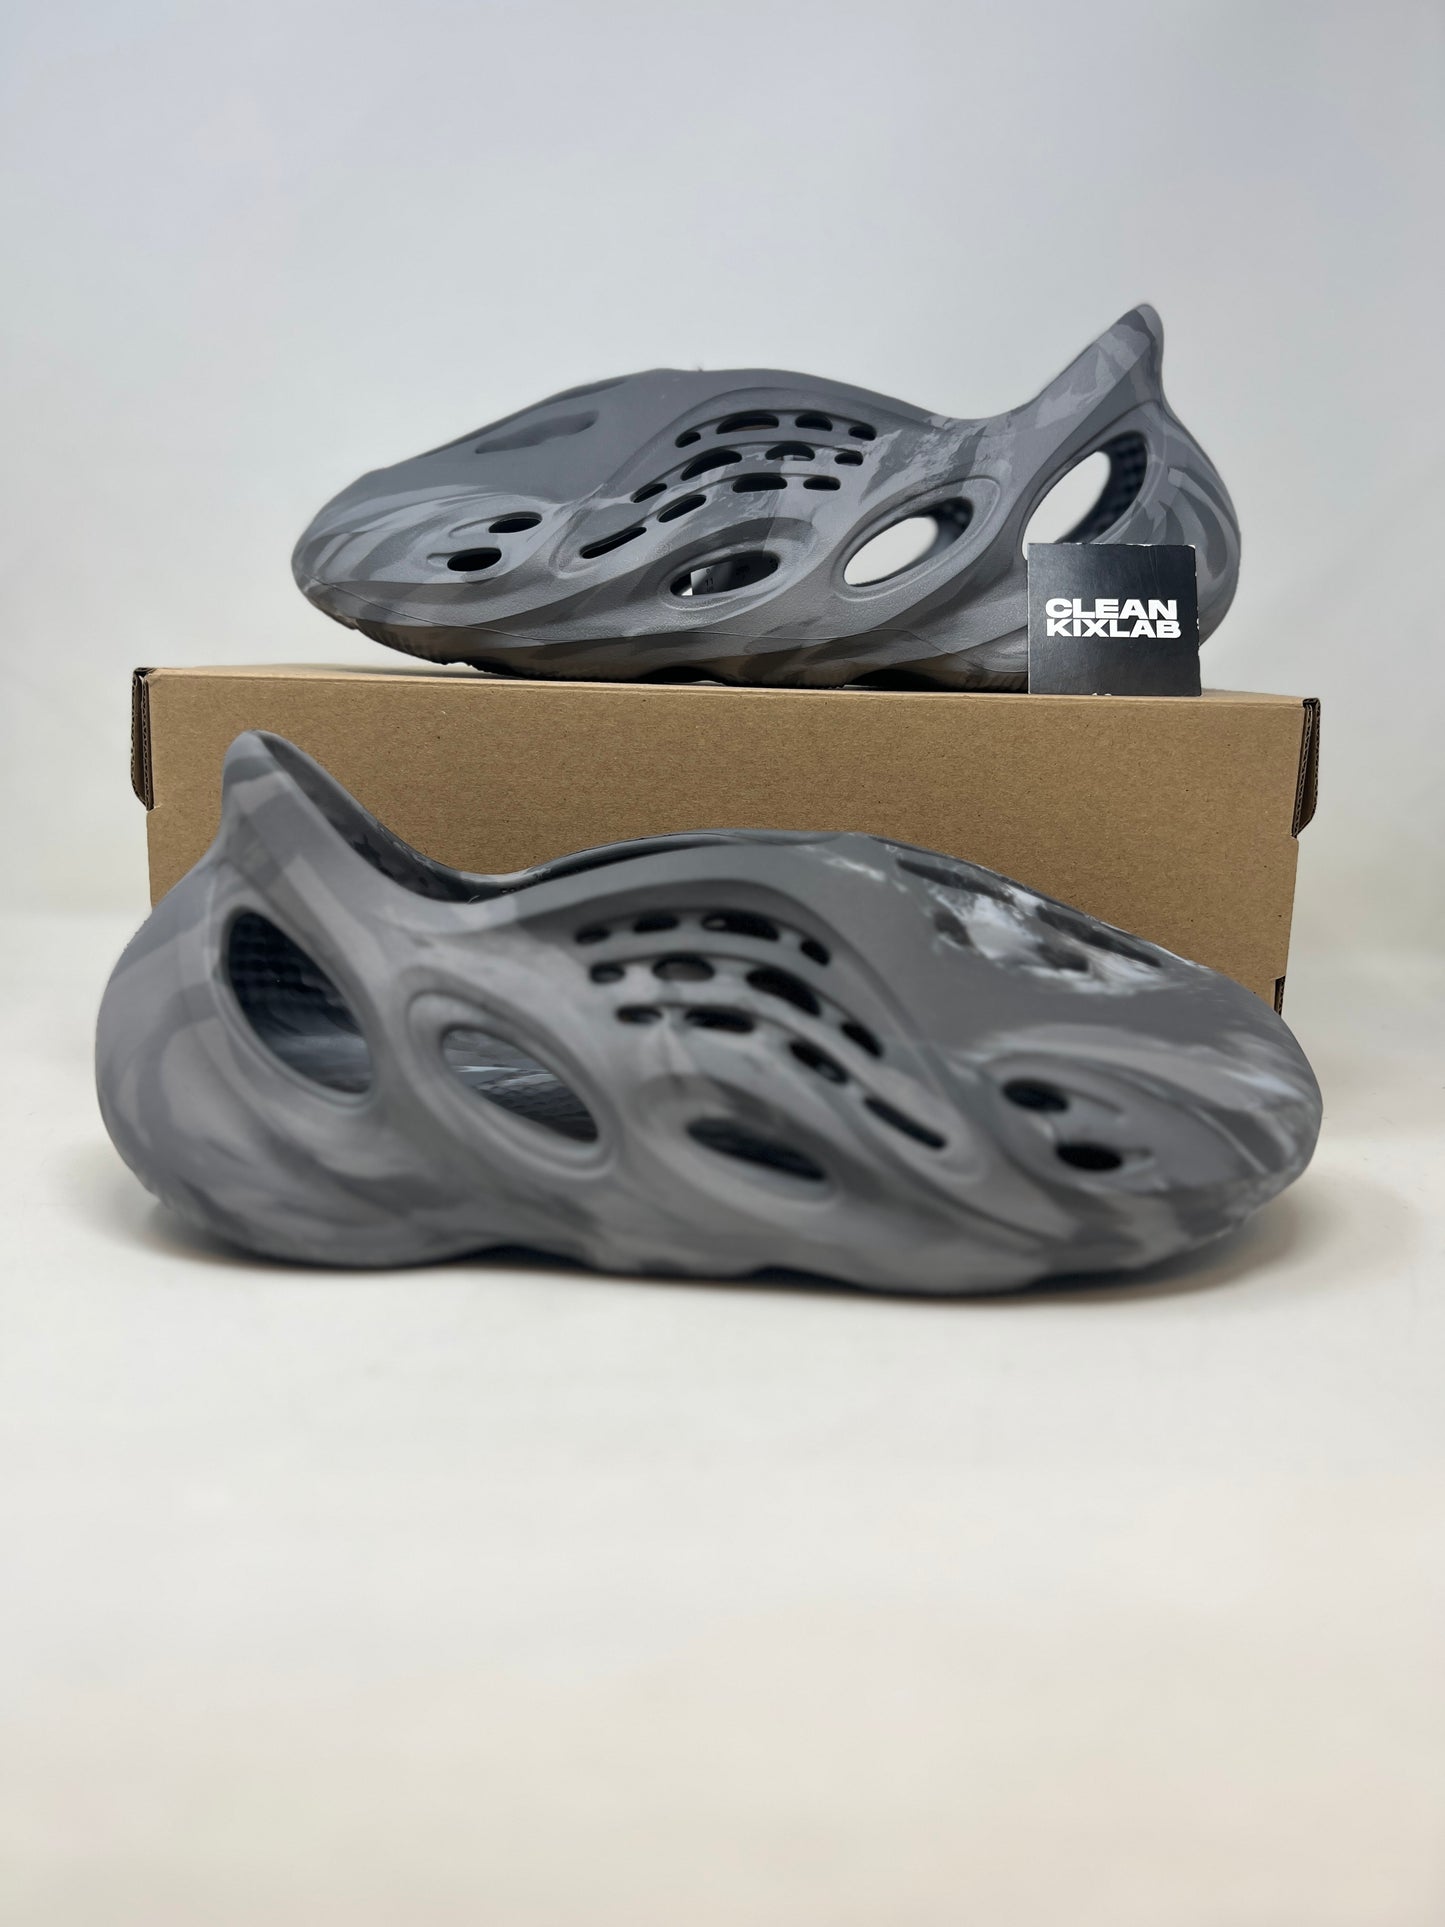 Adidas Yeezy Foam Runner 'Mx Granite'